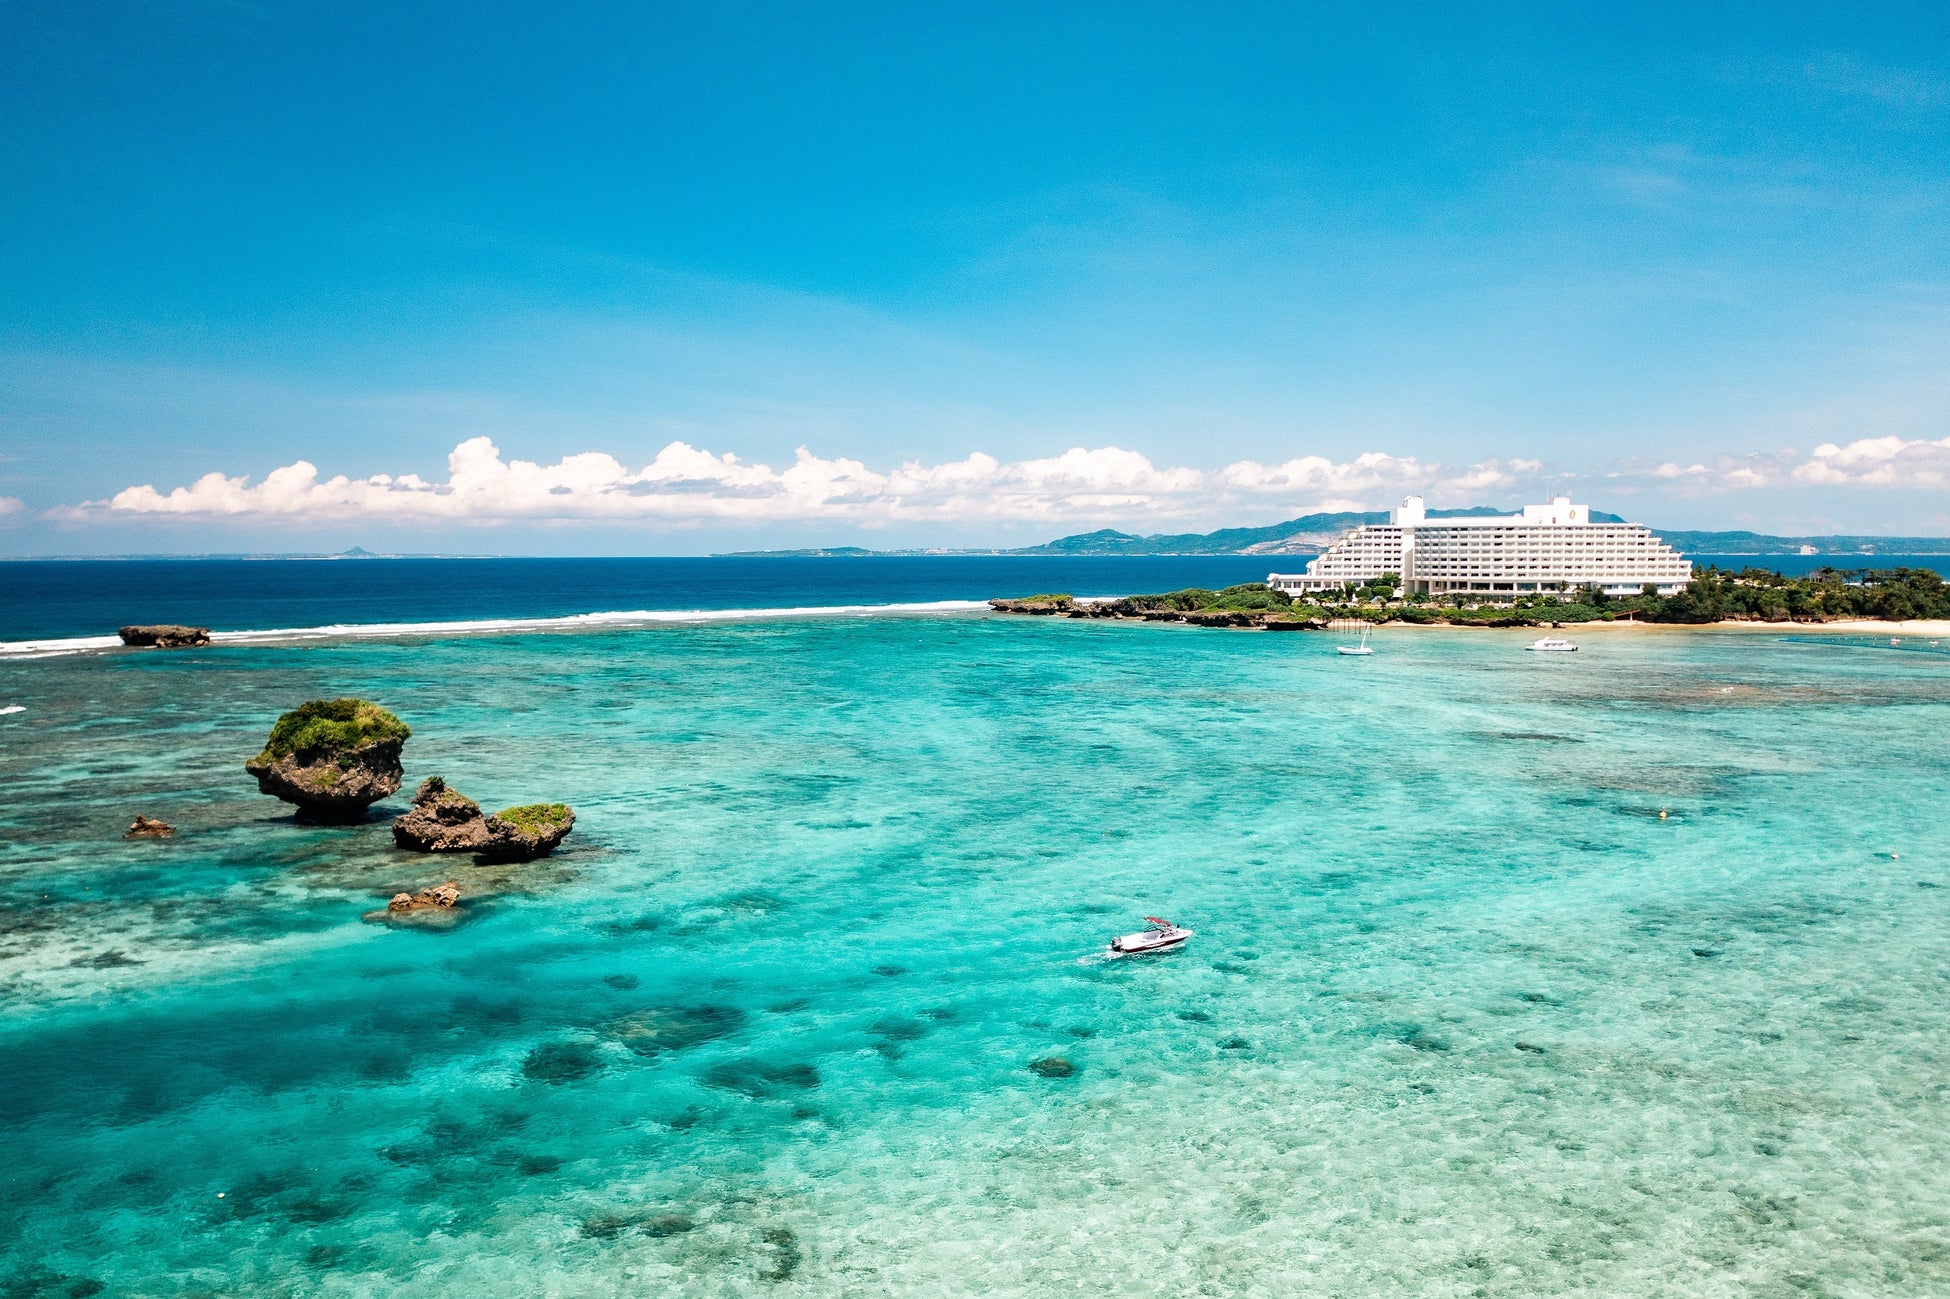 リゾートホテルとして日本初、環境に配慮したダイビング・シュノーケリングの国際基準「グリーン・フィンズ（Green Fins）」の正式認定を取得のサブ画像1_「グリーン・フィンズ」の正式認定を取得したANAインターコンチネンタル万座ビーチリゾート（写真右奥）の周りにはサンゴ礁に守られた澄んだ海が広がる